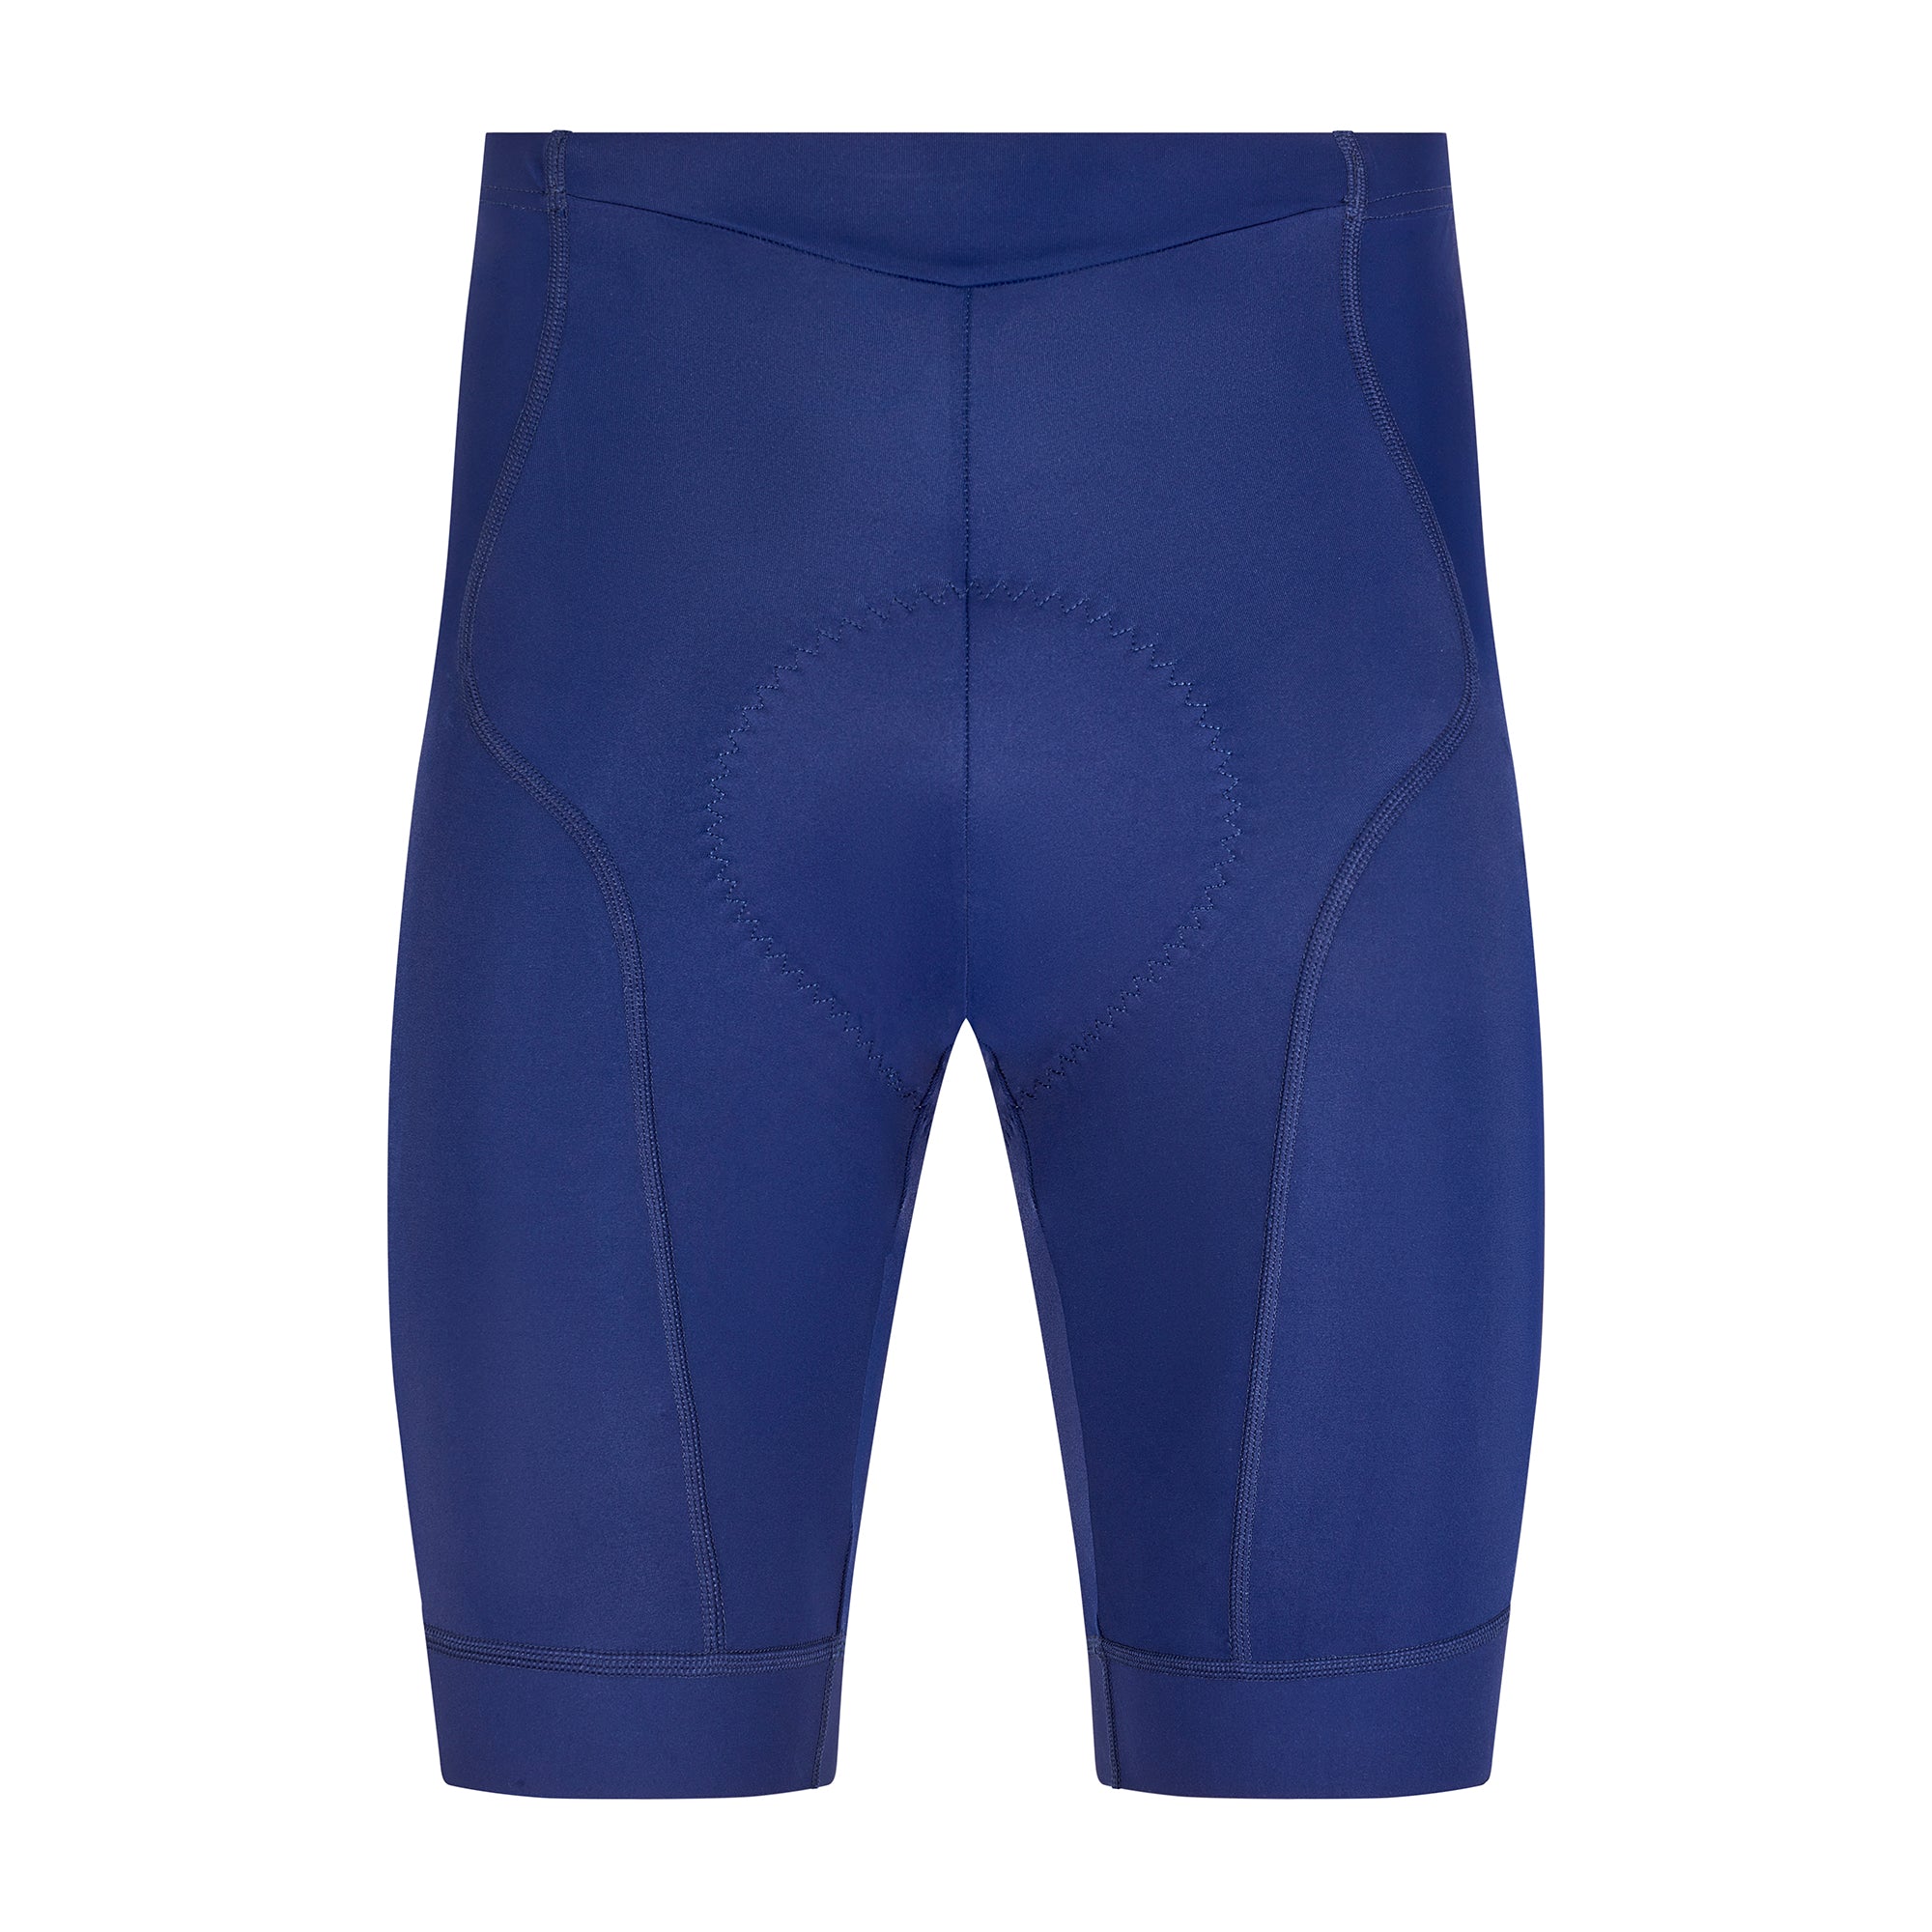 Pantalones cortos de ciclismo Essential para mujer - Azul marino